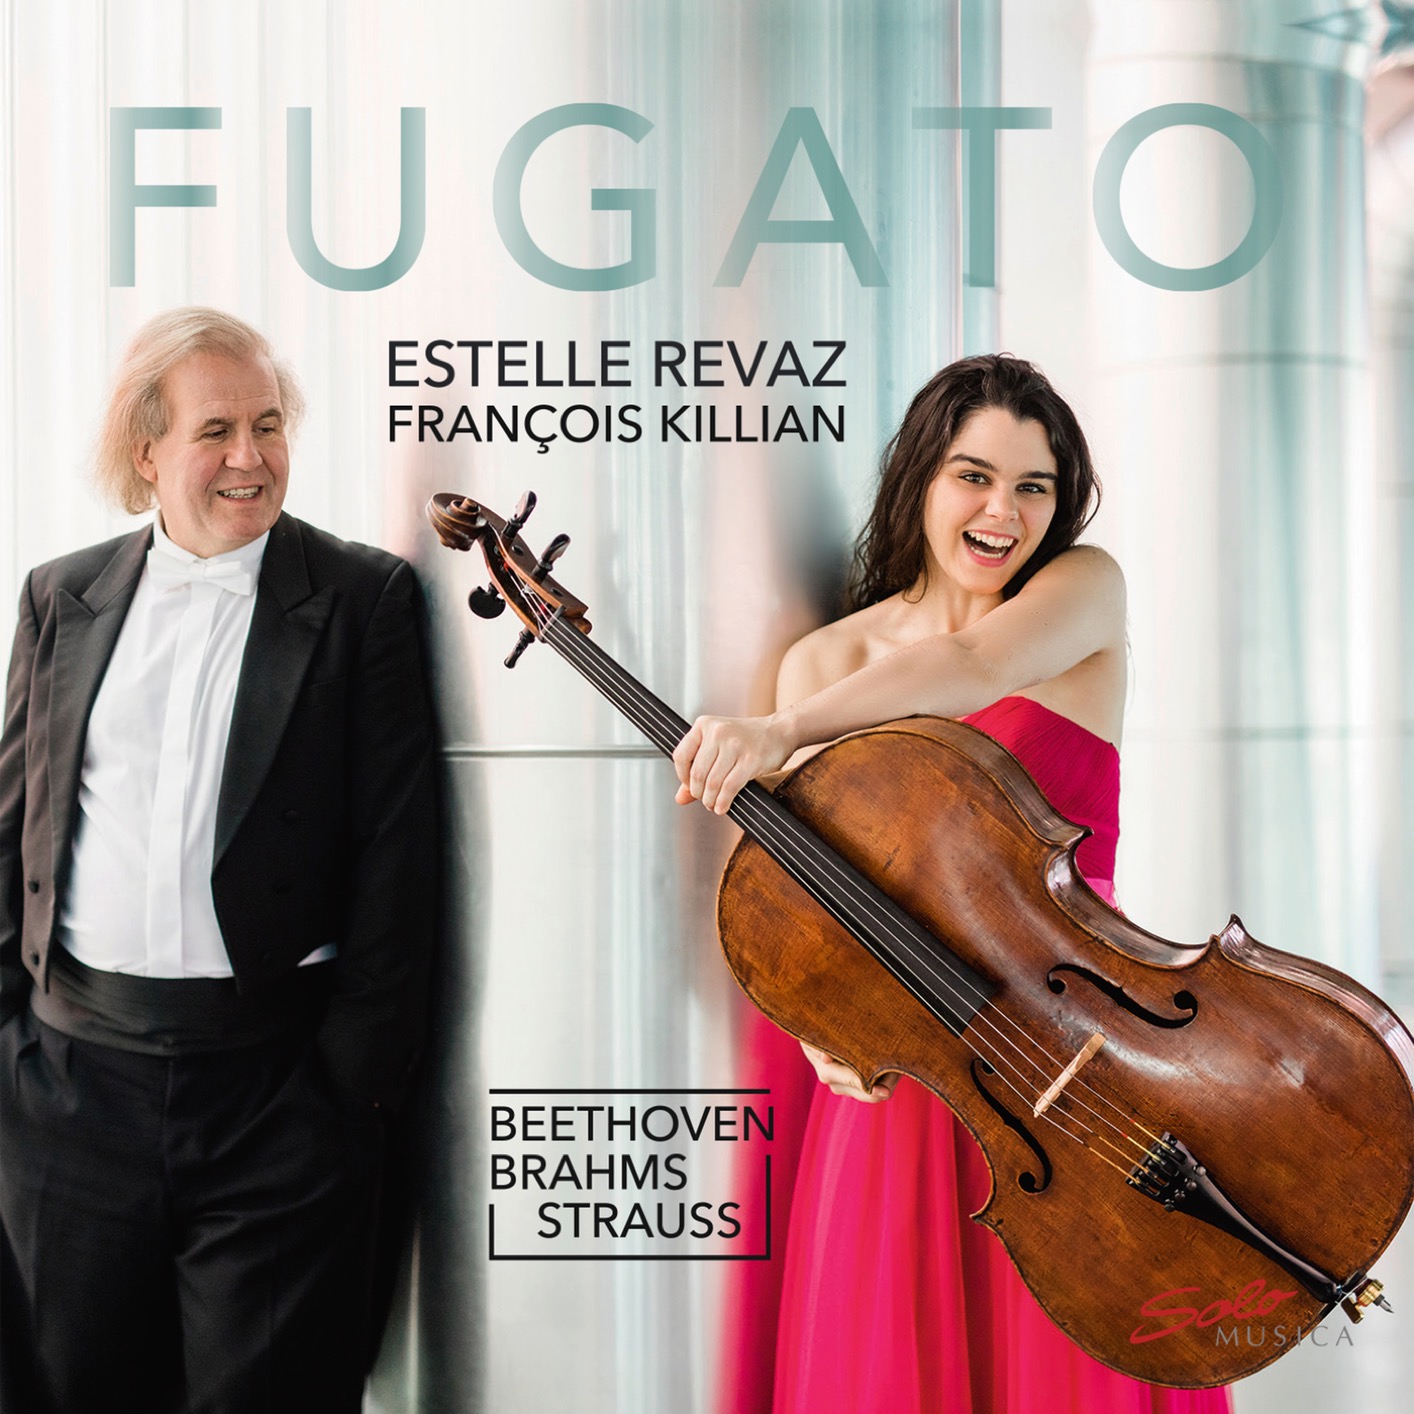 Estelle Revaz & Francois Killian - Fugato (2019) [FLAC 24bit/96kHz]